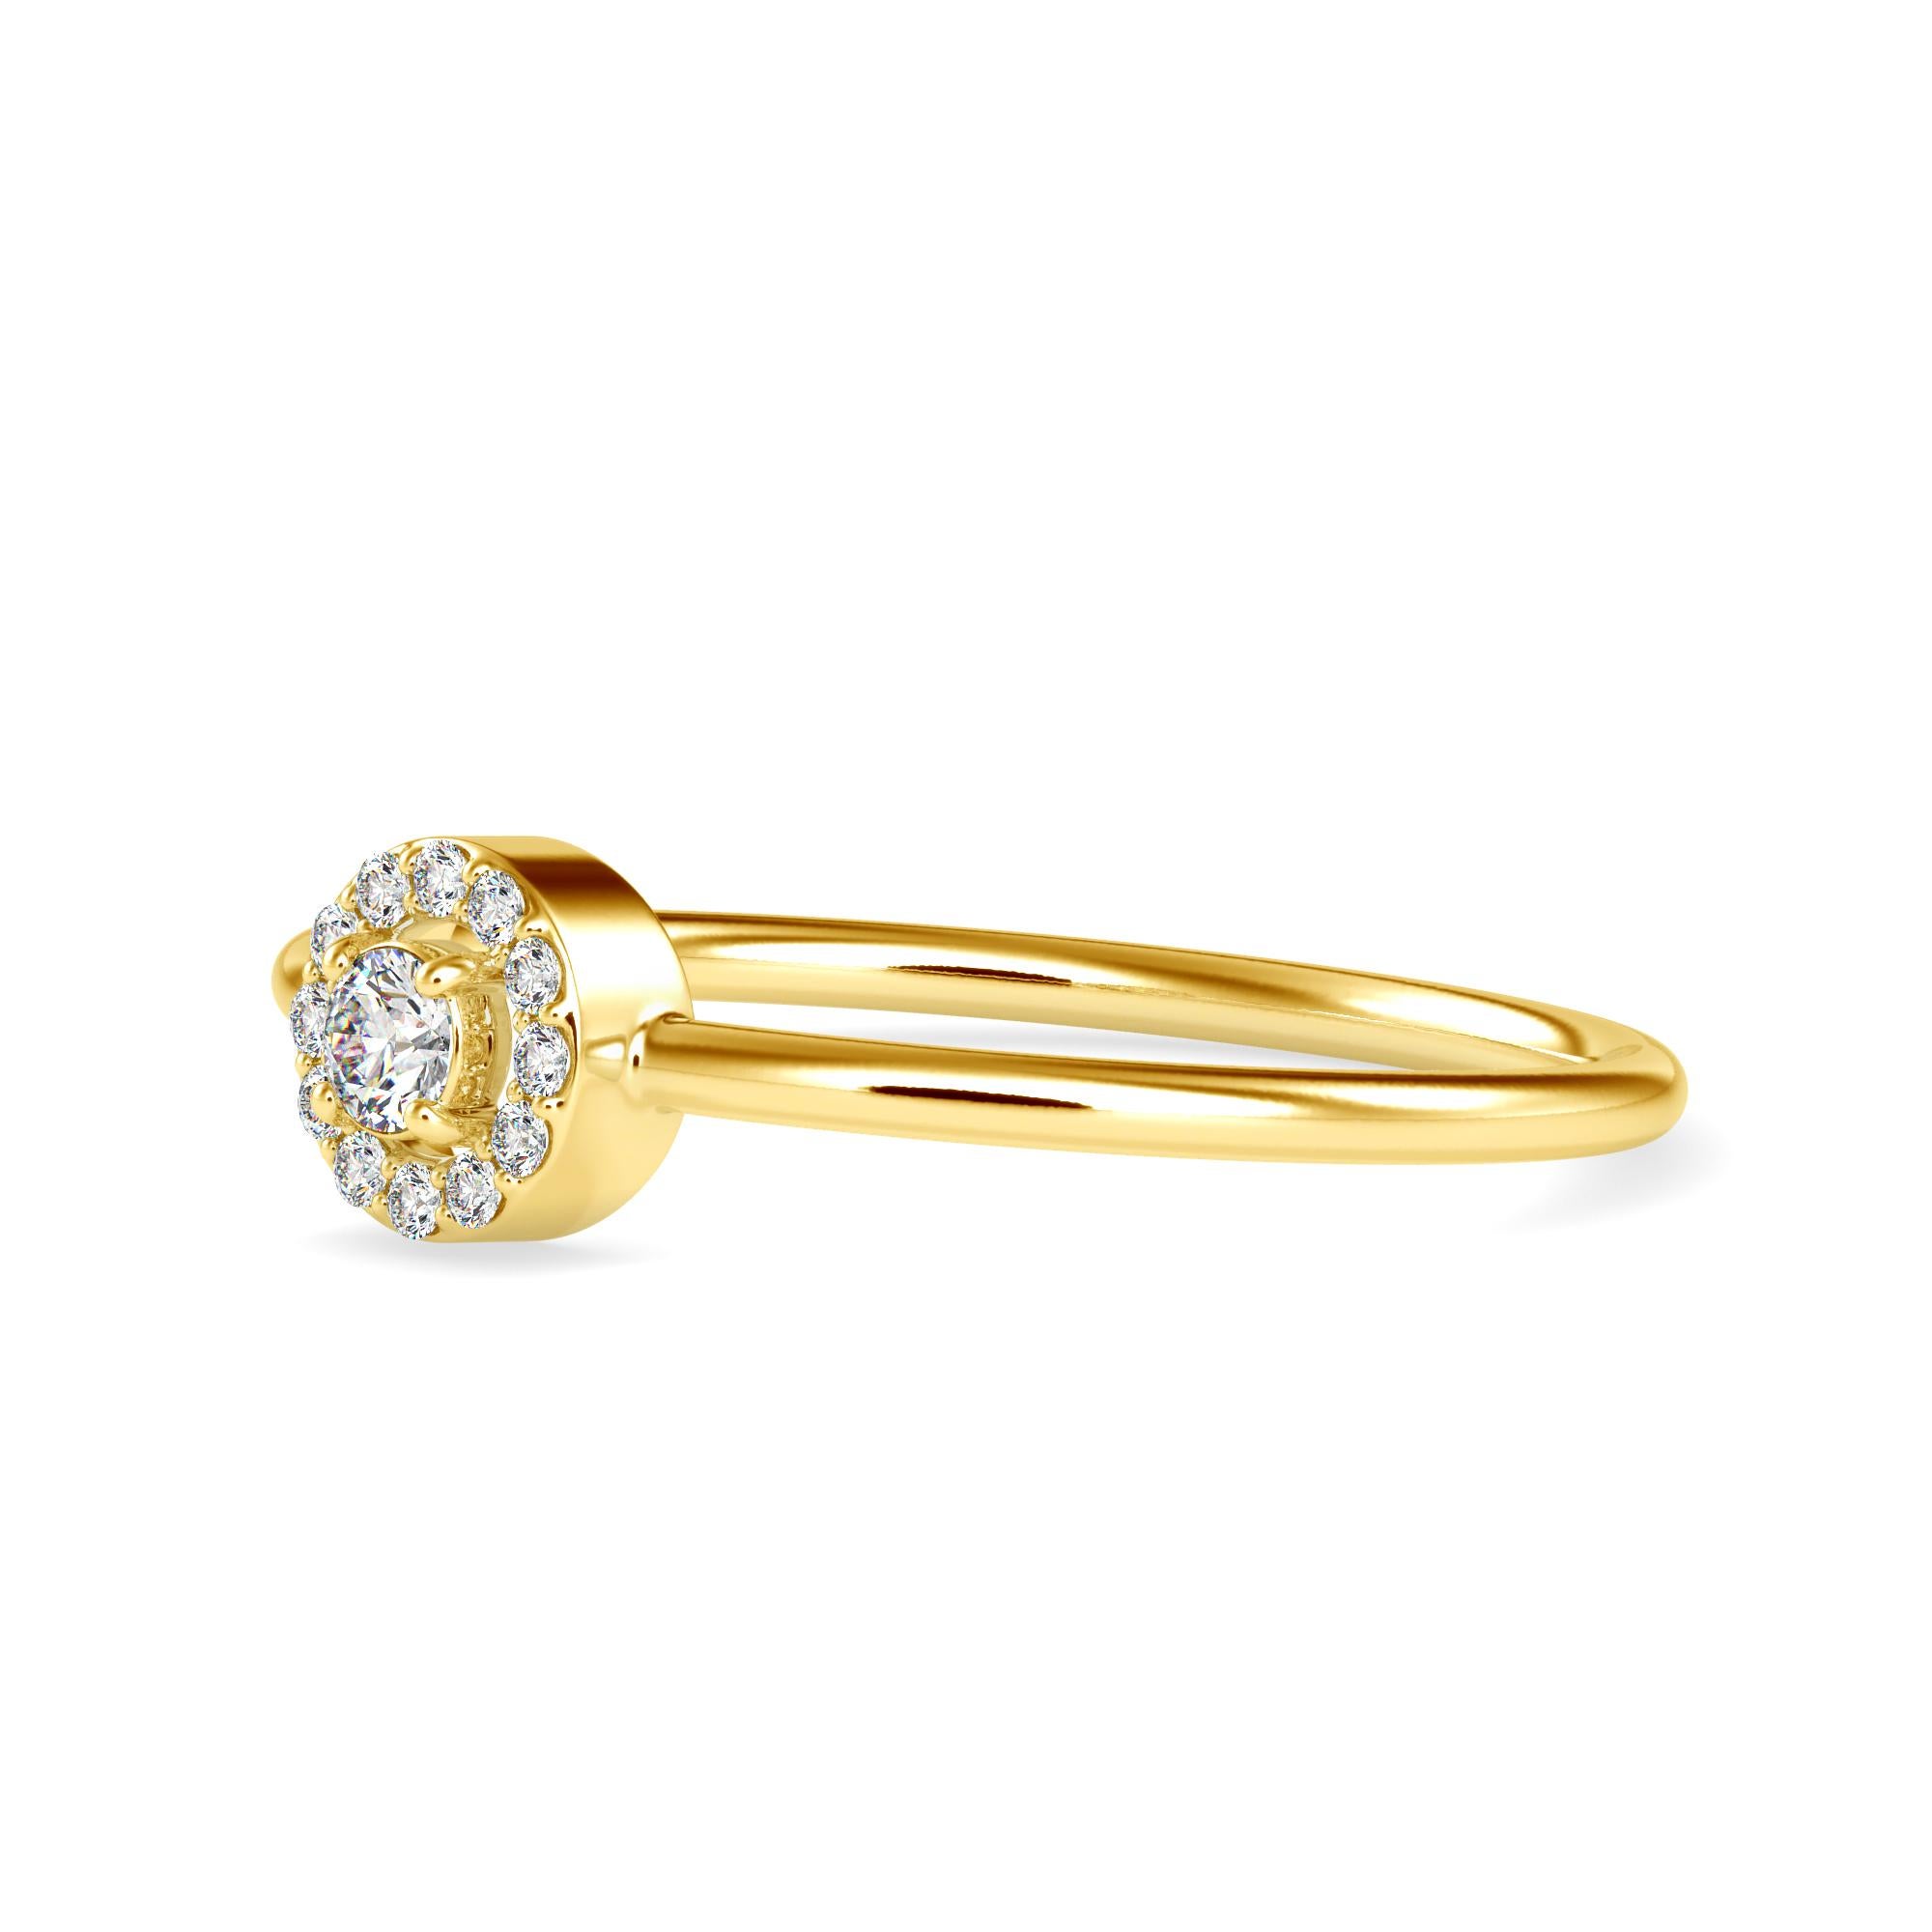 0,11 Karat Diamant 14K Gelbgold Ring
Gestempelt: 14K
Gesamtgewicht des Rings: 1.2 Gramm 
Gewicht des zentralen Diamanten: 0,06 Karat (Farbe F-G, Reinheit VS2-SI1) 2,5 Millimeter 
Gewicht der seitlichen Diamanten: 0,045 Karat (Farbe F-G, Reinheit